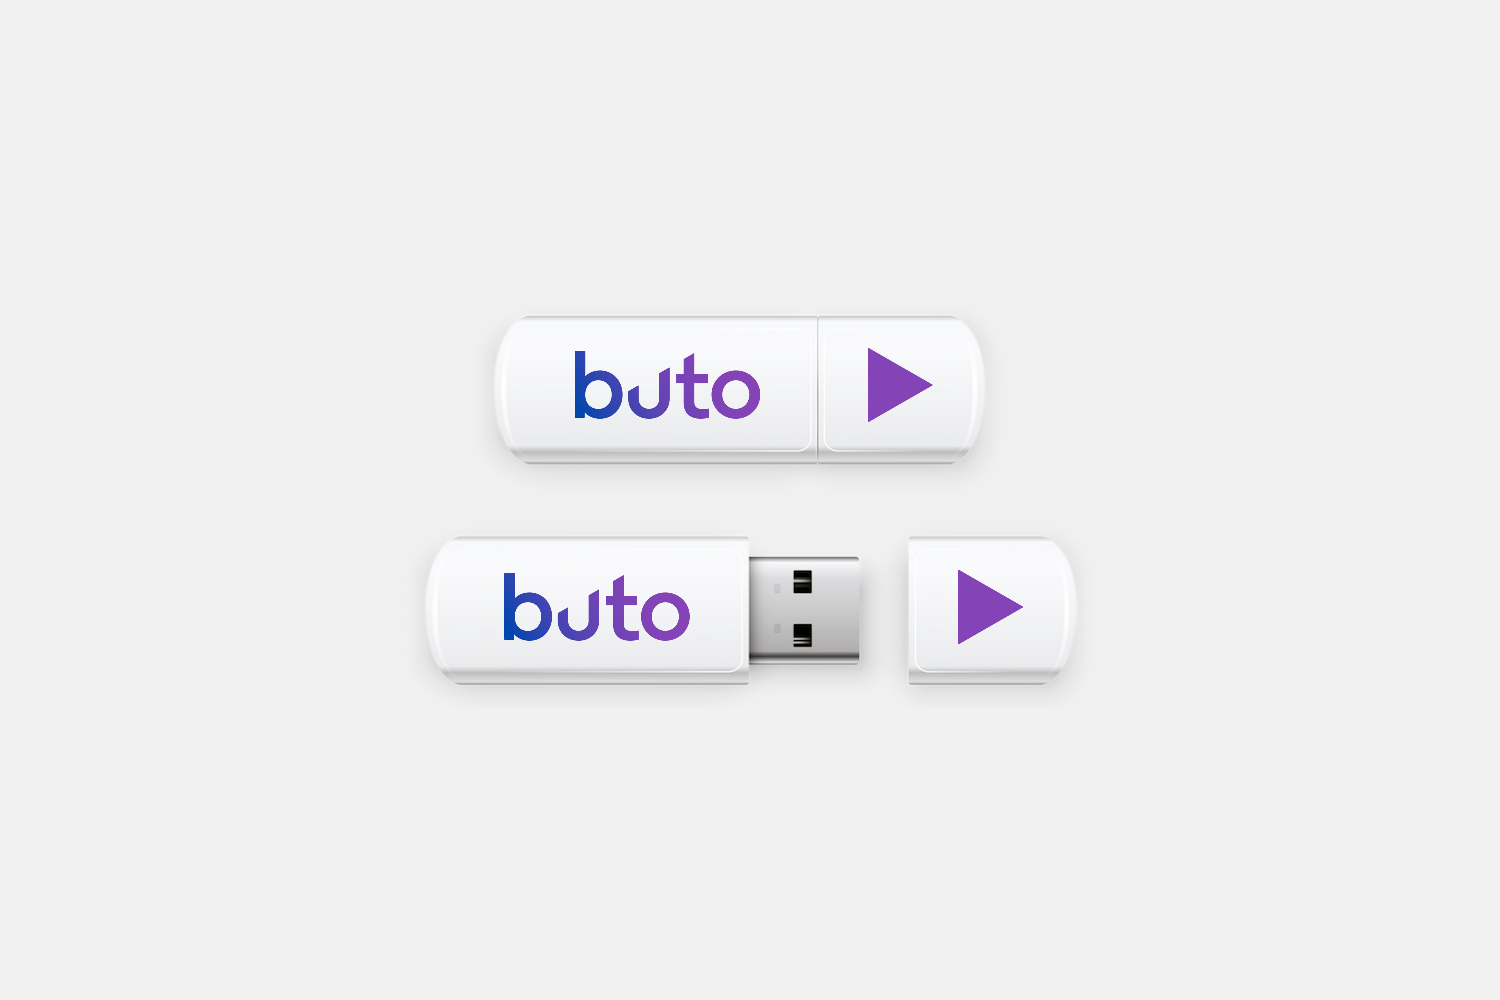 视频托管平台Buto品牌视觉设计